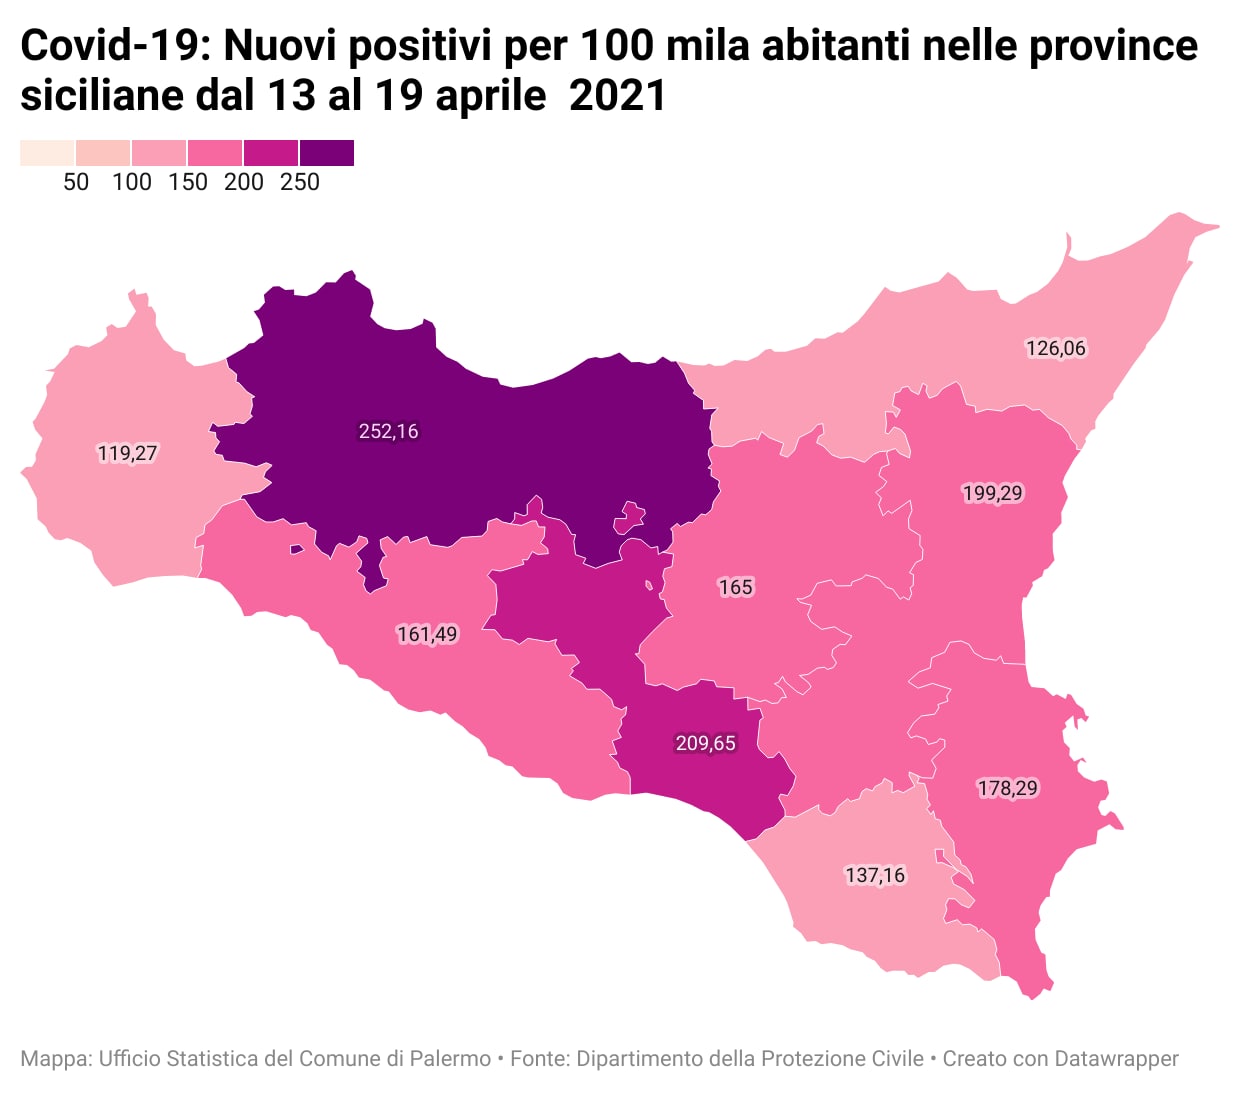 Covid19 - Nuovi positivi per 100 mila abitanti nelle province siciliane dal 13 al 19 aprile 2021